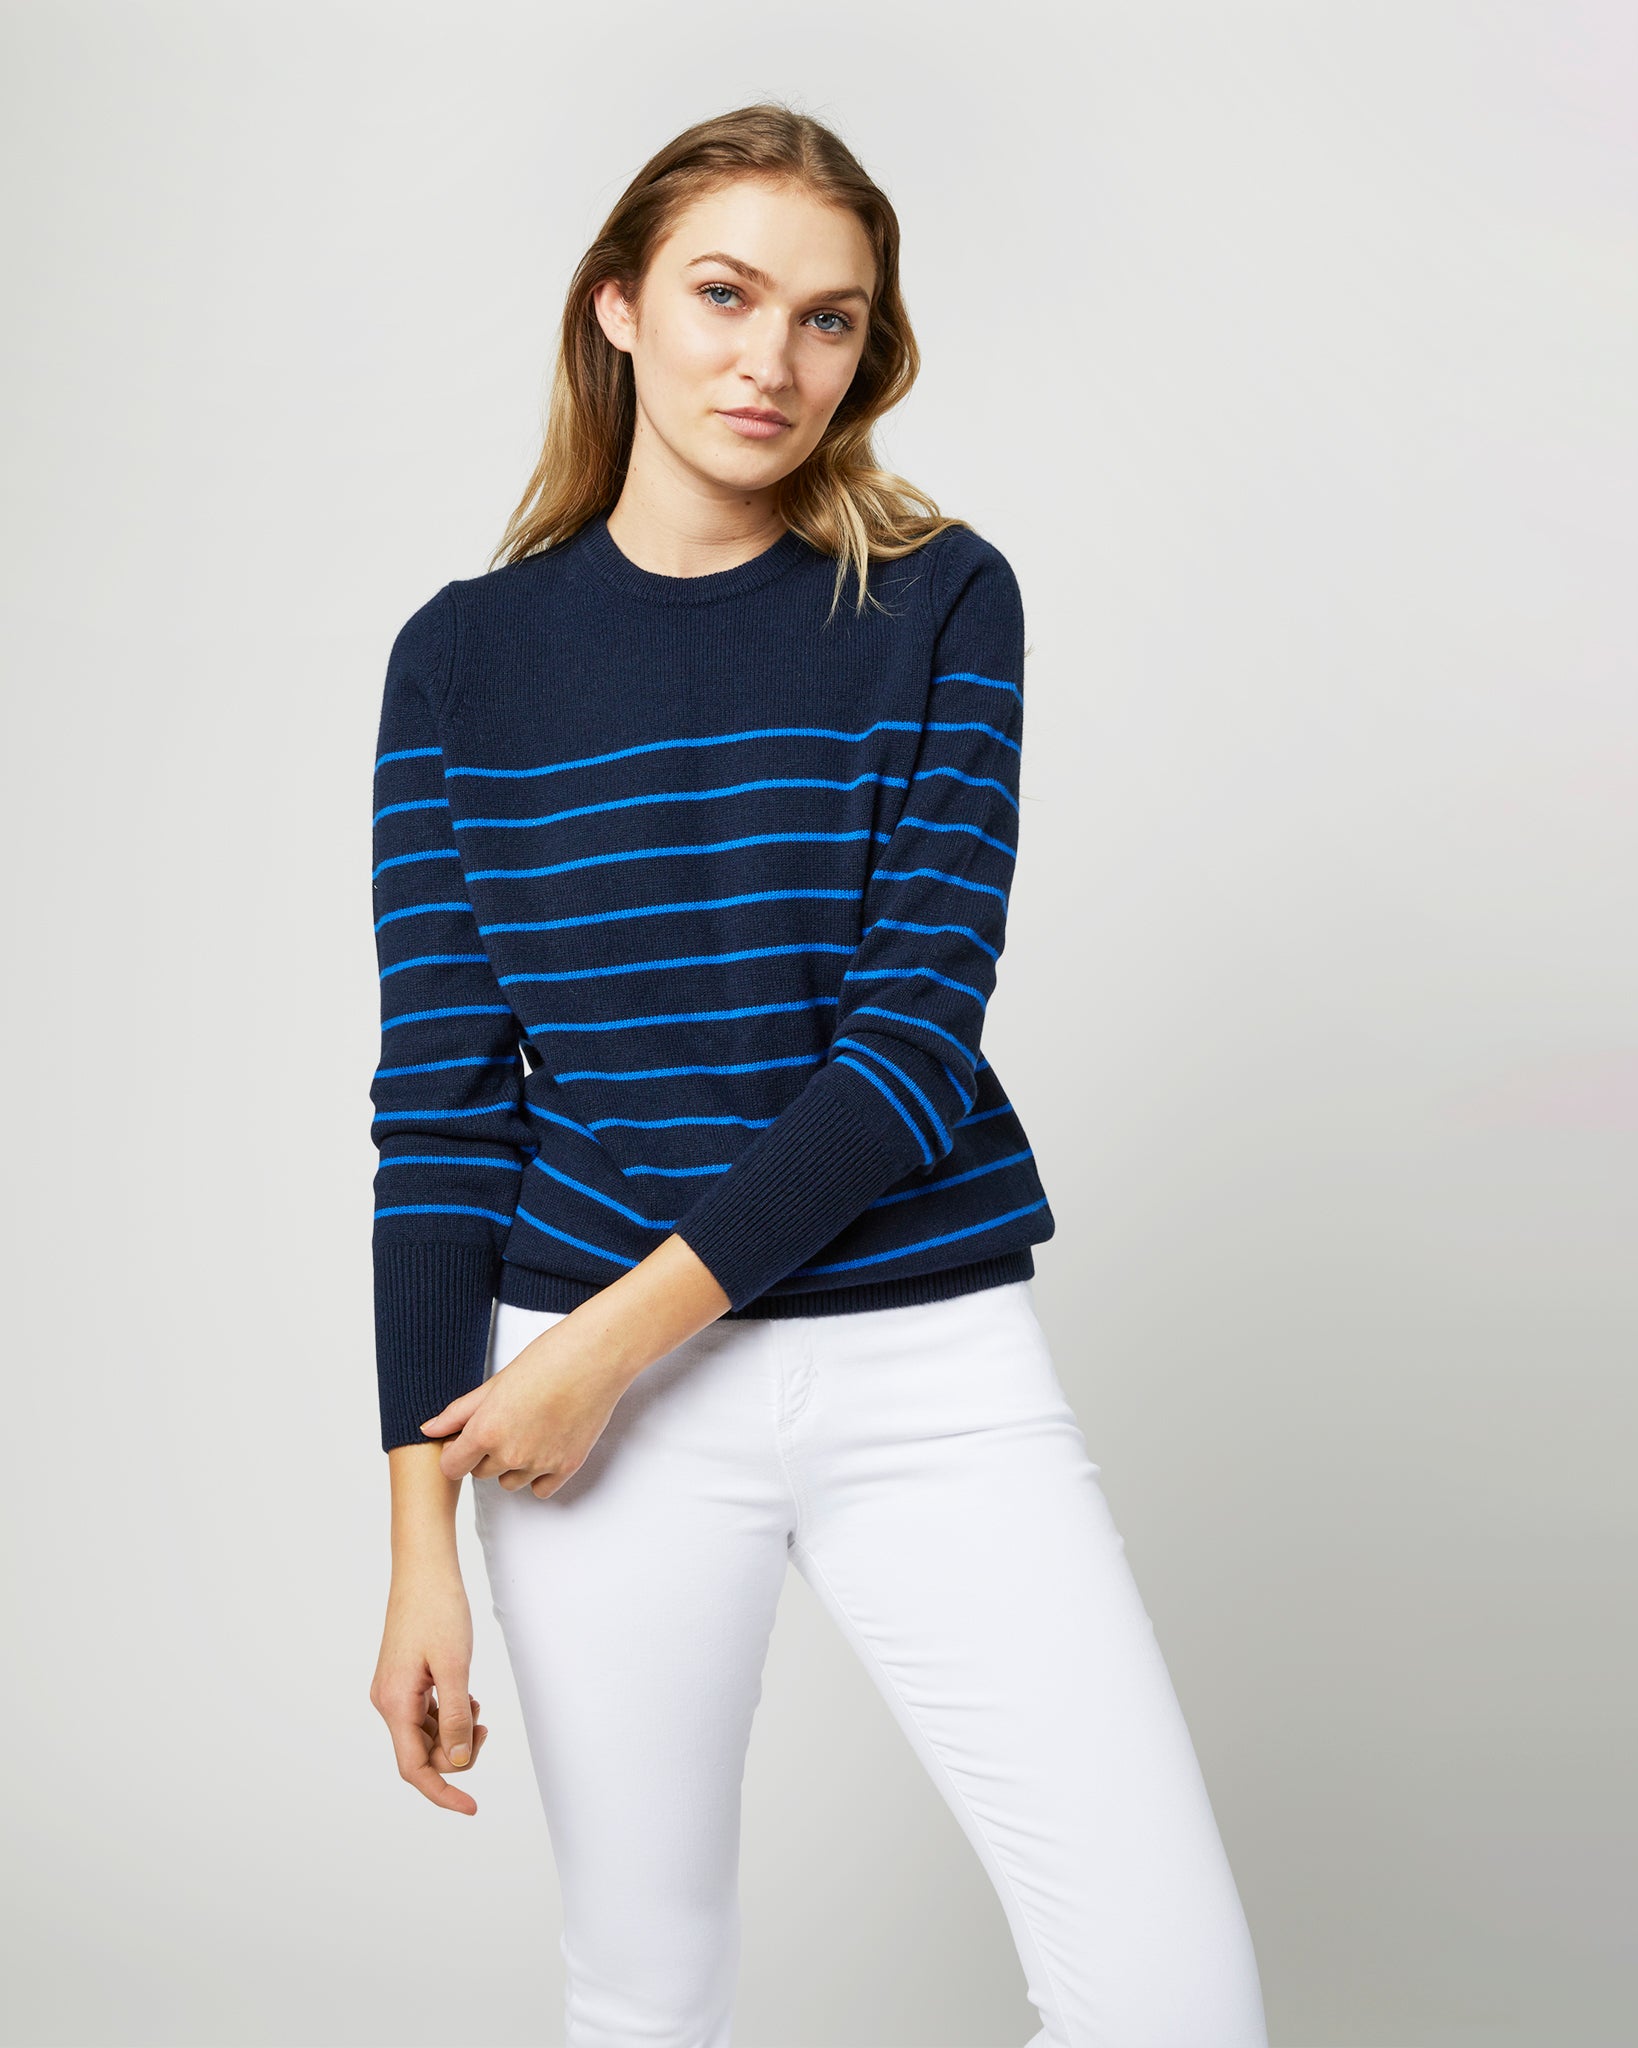 Cydney Boyfriend Crewneck Sweater in Navy/Blue Stripe Cashmere